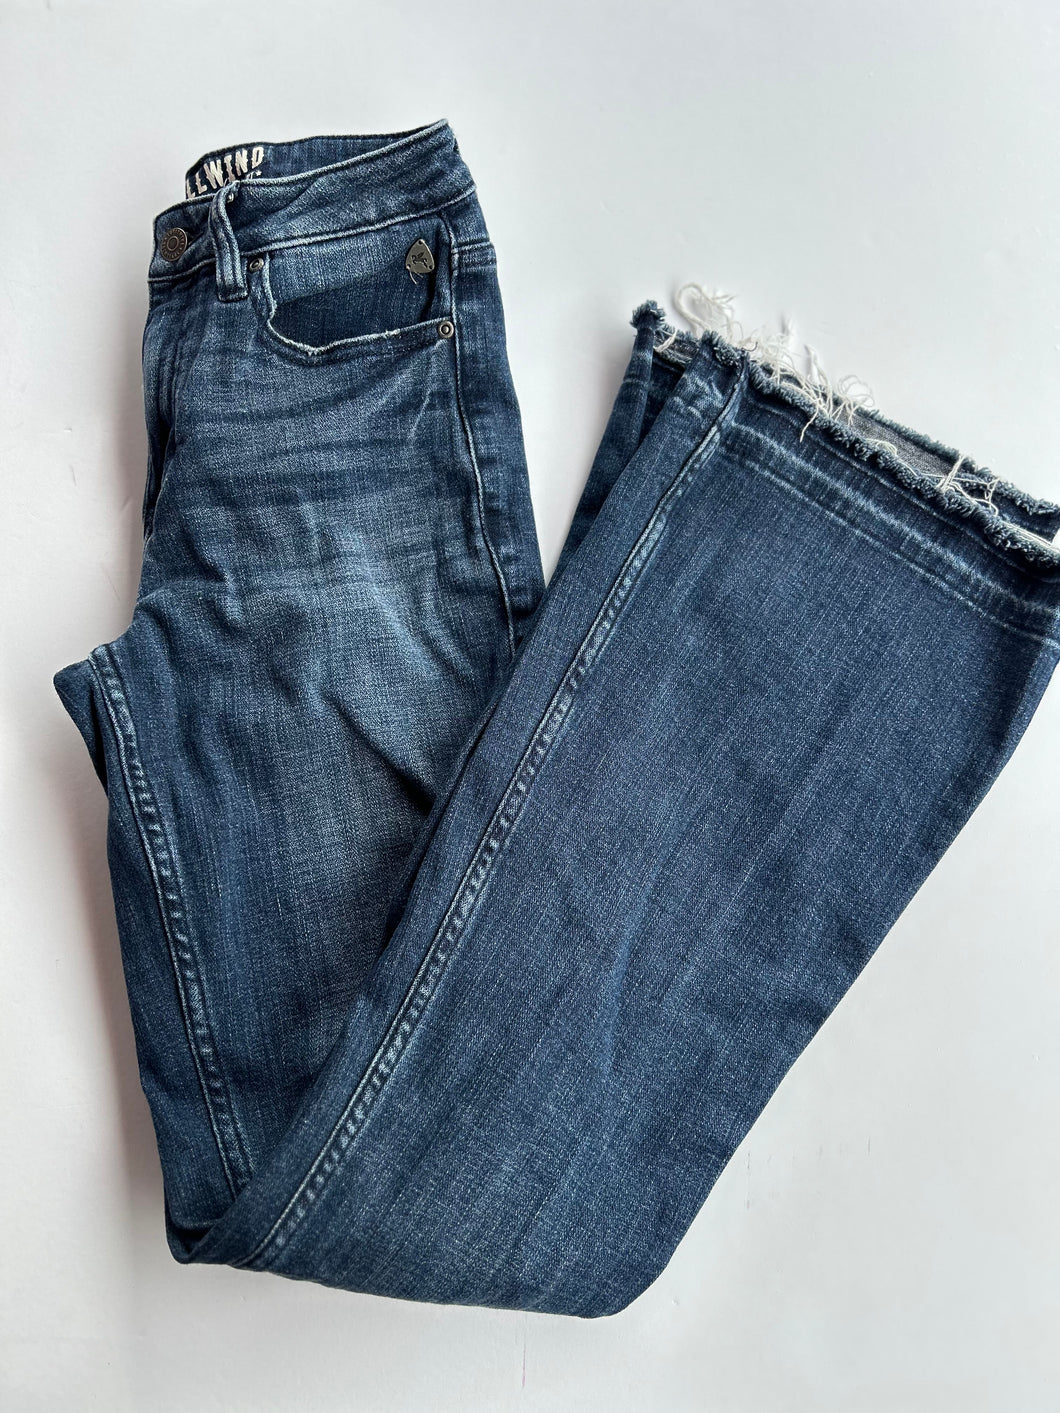 Denim Miranda Lambert Jeans, 2